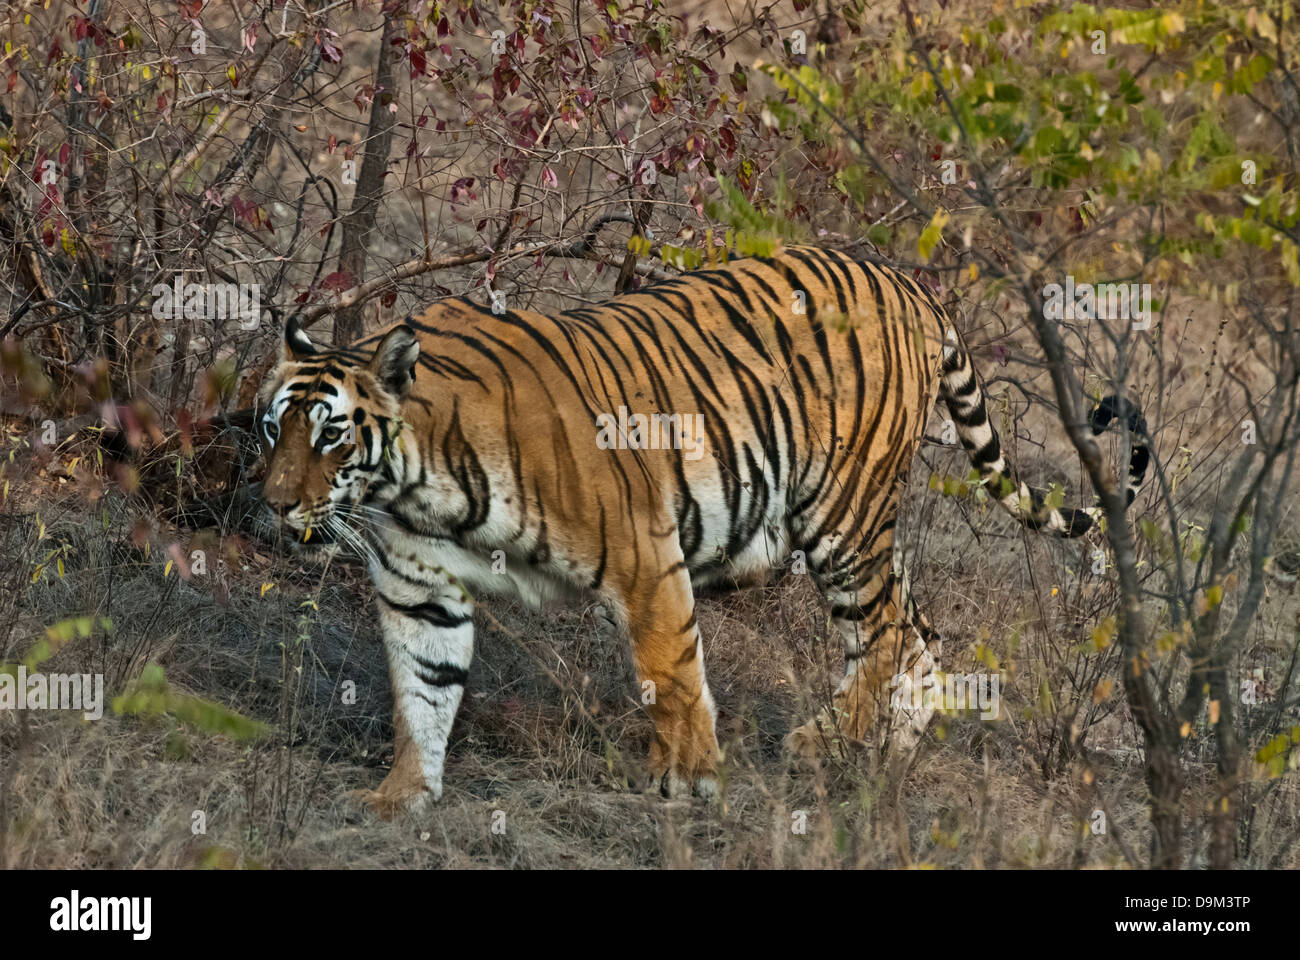 Bengal tiger walking through brush in Bandhavgarh National Park, India Stock Photo